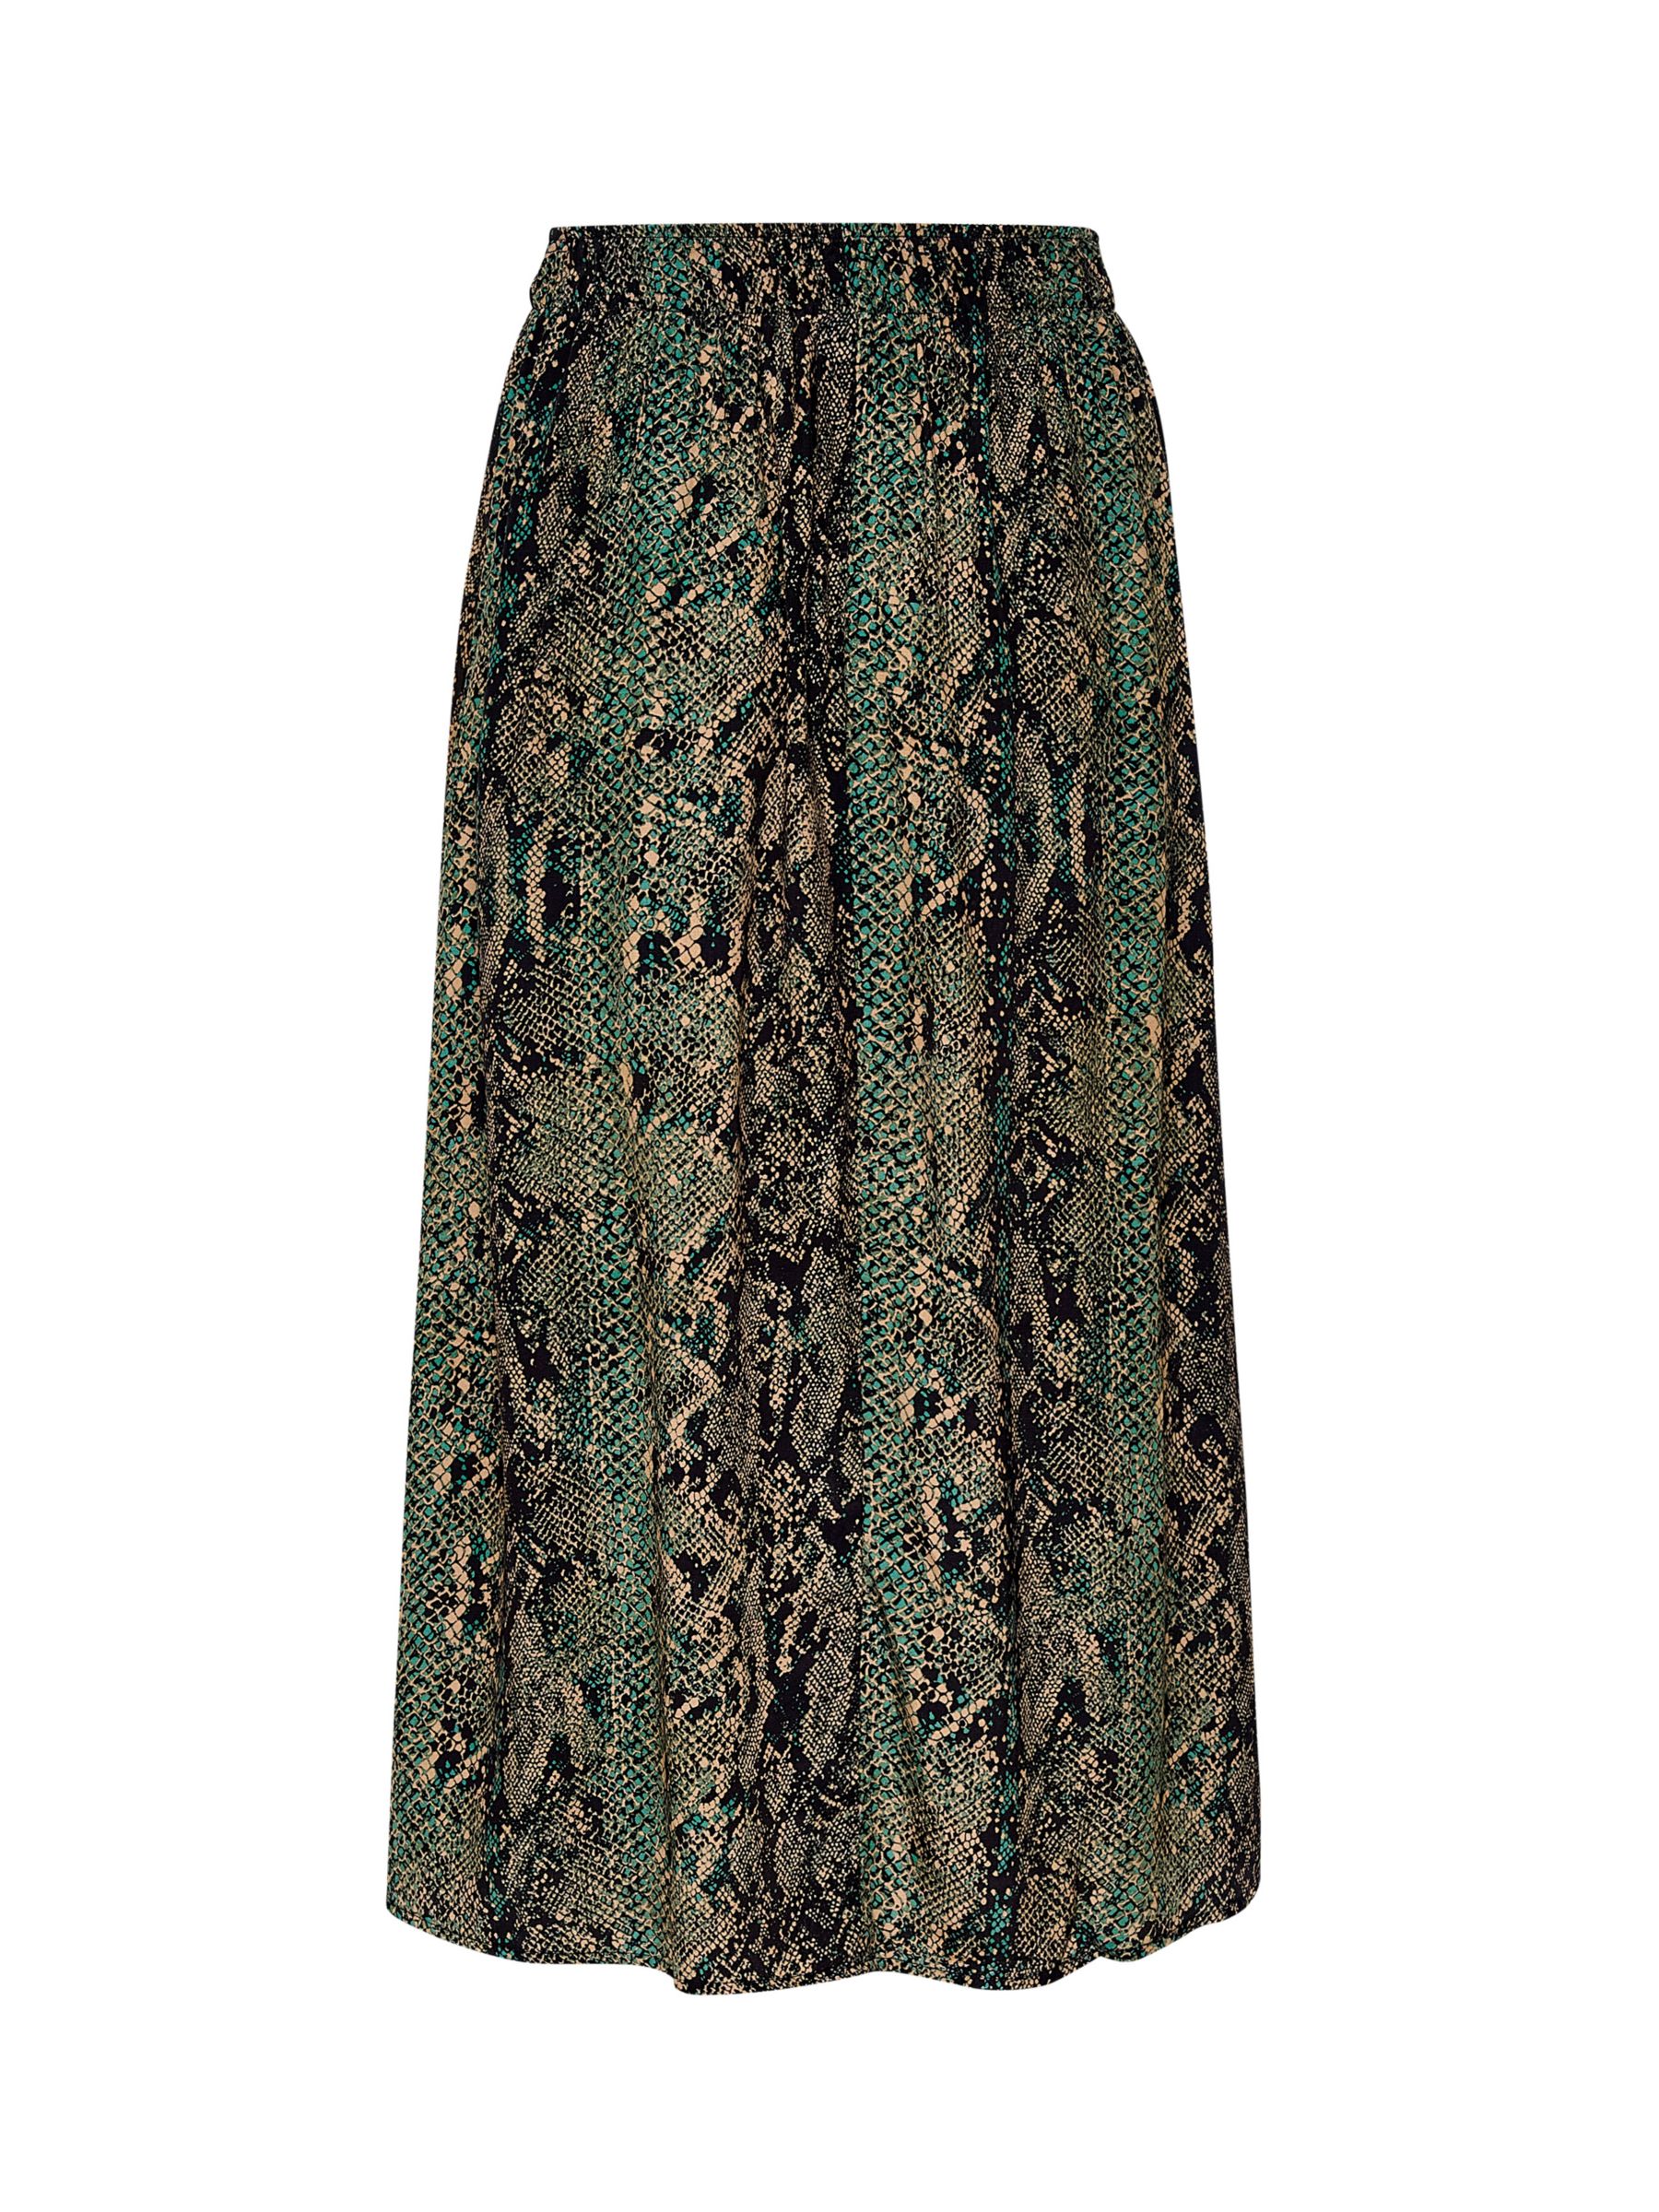 Buy Saint Tropez Tessa Elastic Waist Midi Skirt, Forest Snake Skin Online at johnlewis.com